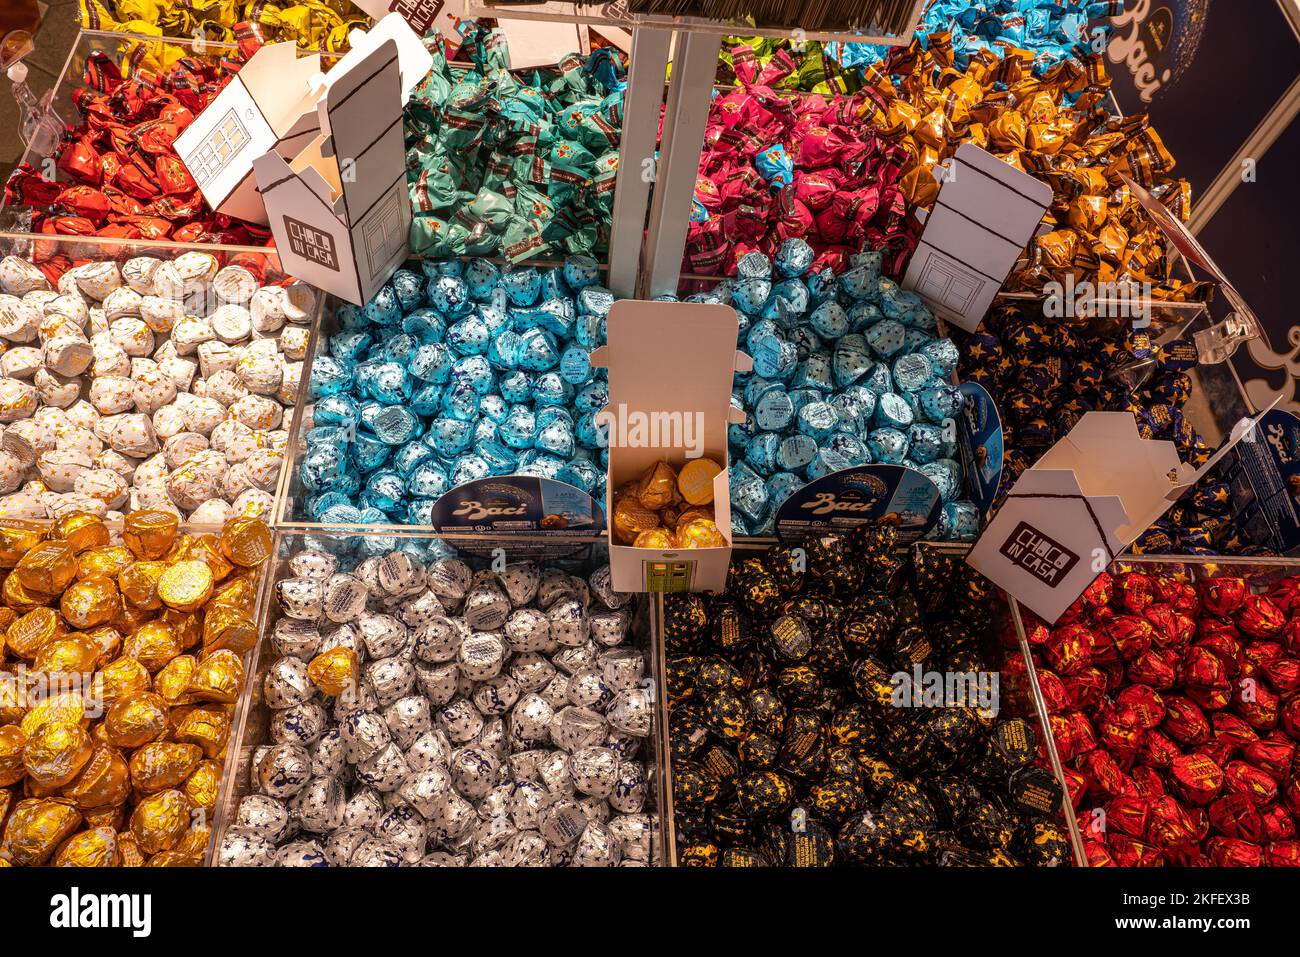 Eine Auswahl an Schokoriegeln und Perugini-Schokolade, typisch für die Stadt Perugia, in einem Süßigkeiten- und Schokoladenladen. Perugia, Umbrien, Italien, Europa Stockfoto